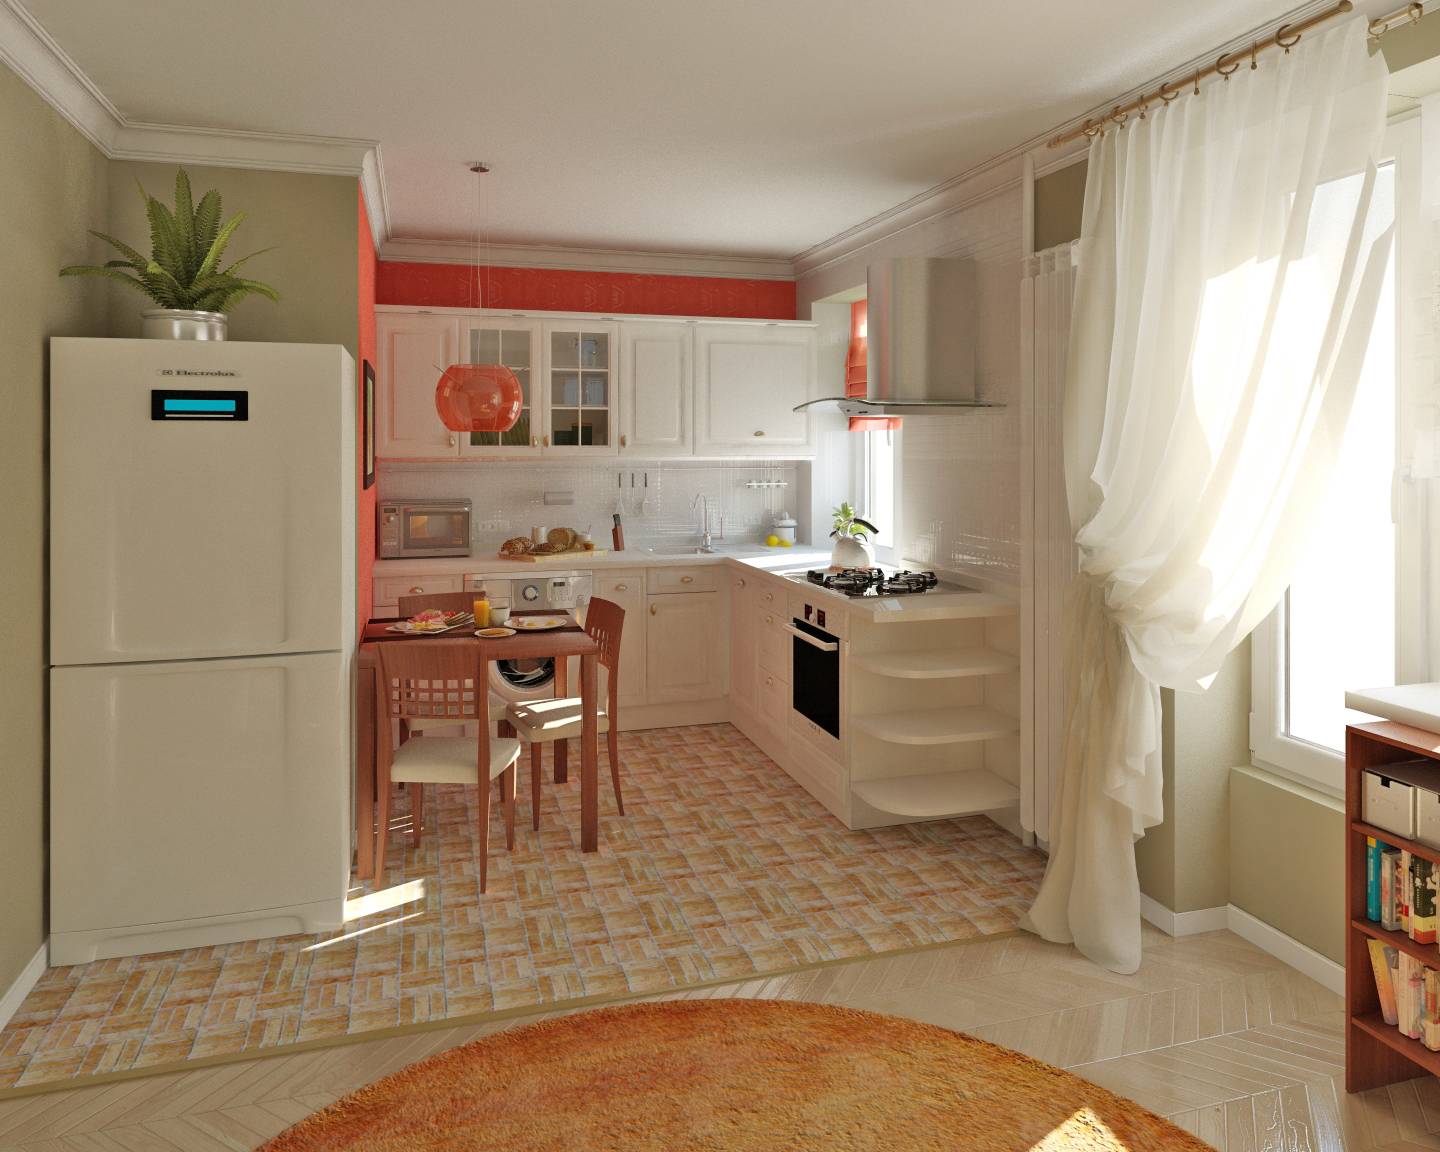 Дизайн и планировка кухни, совмещенной с гостиной в двушке-хрущевке